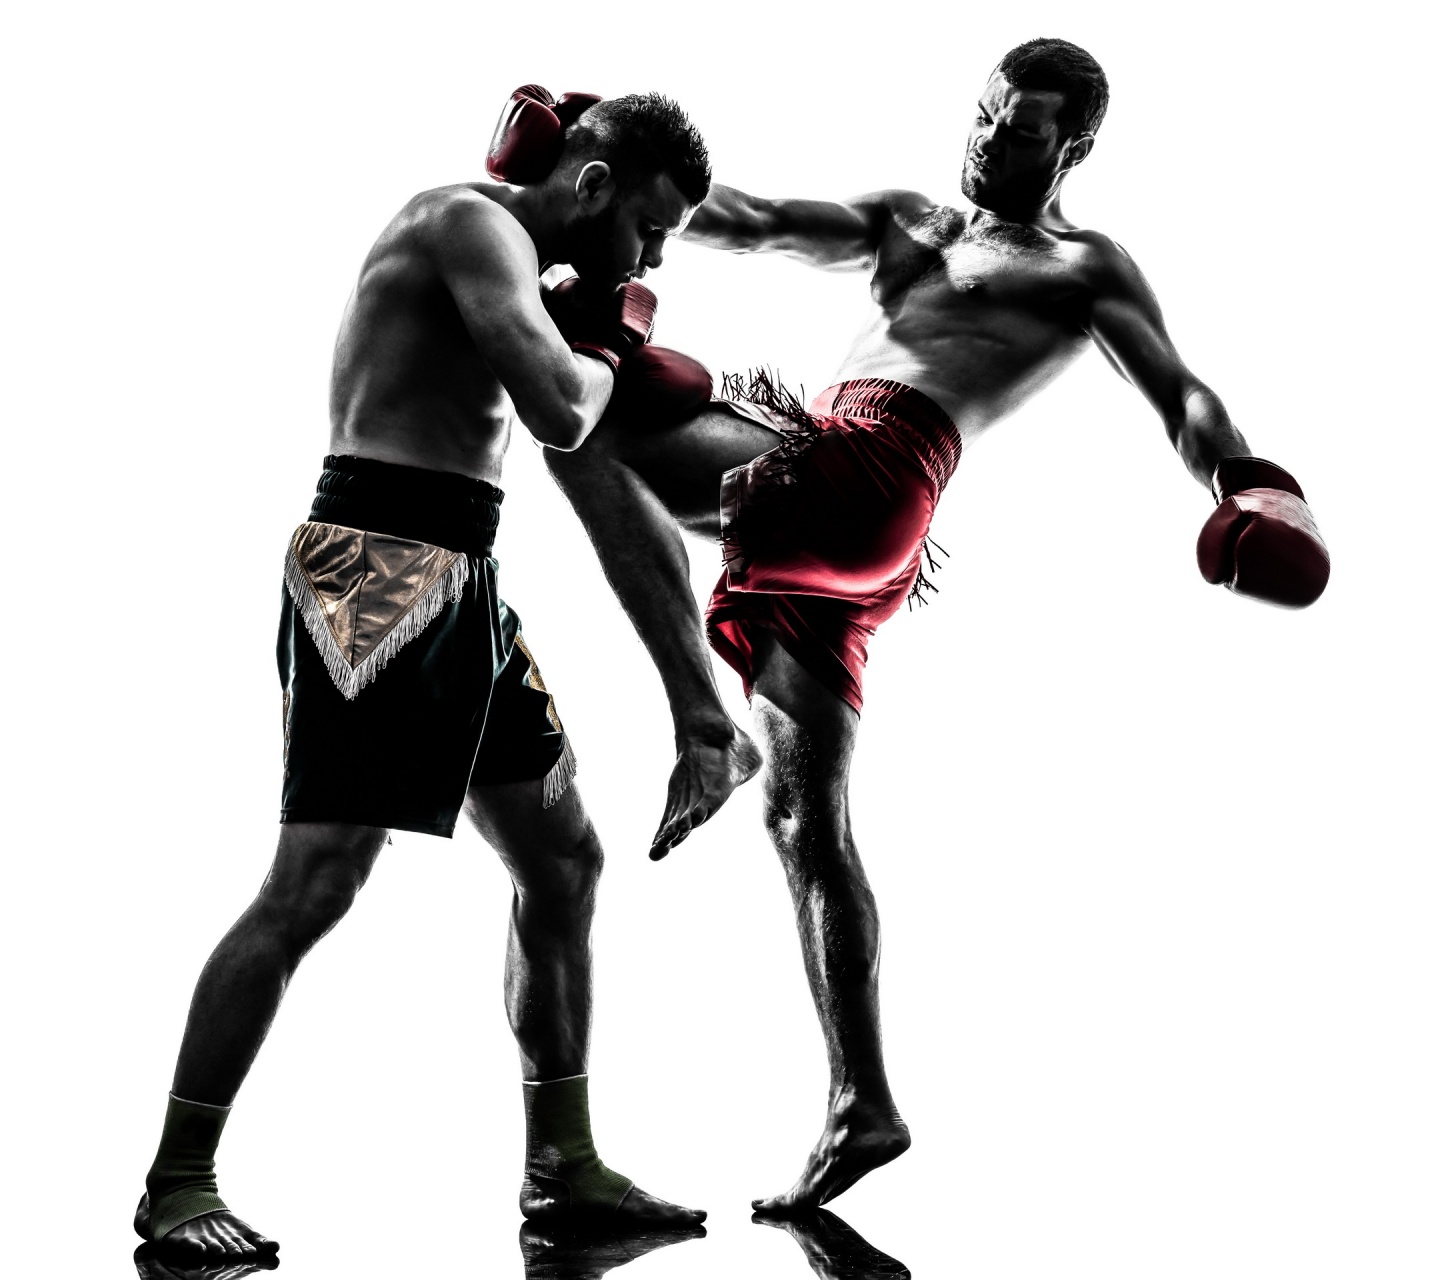 kickboxing wallpaper hd,kickboxing,muay thai,boxe,straordinari sport da combattimento,calcio